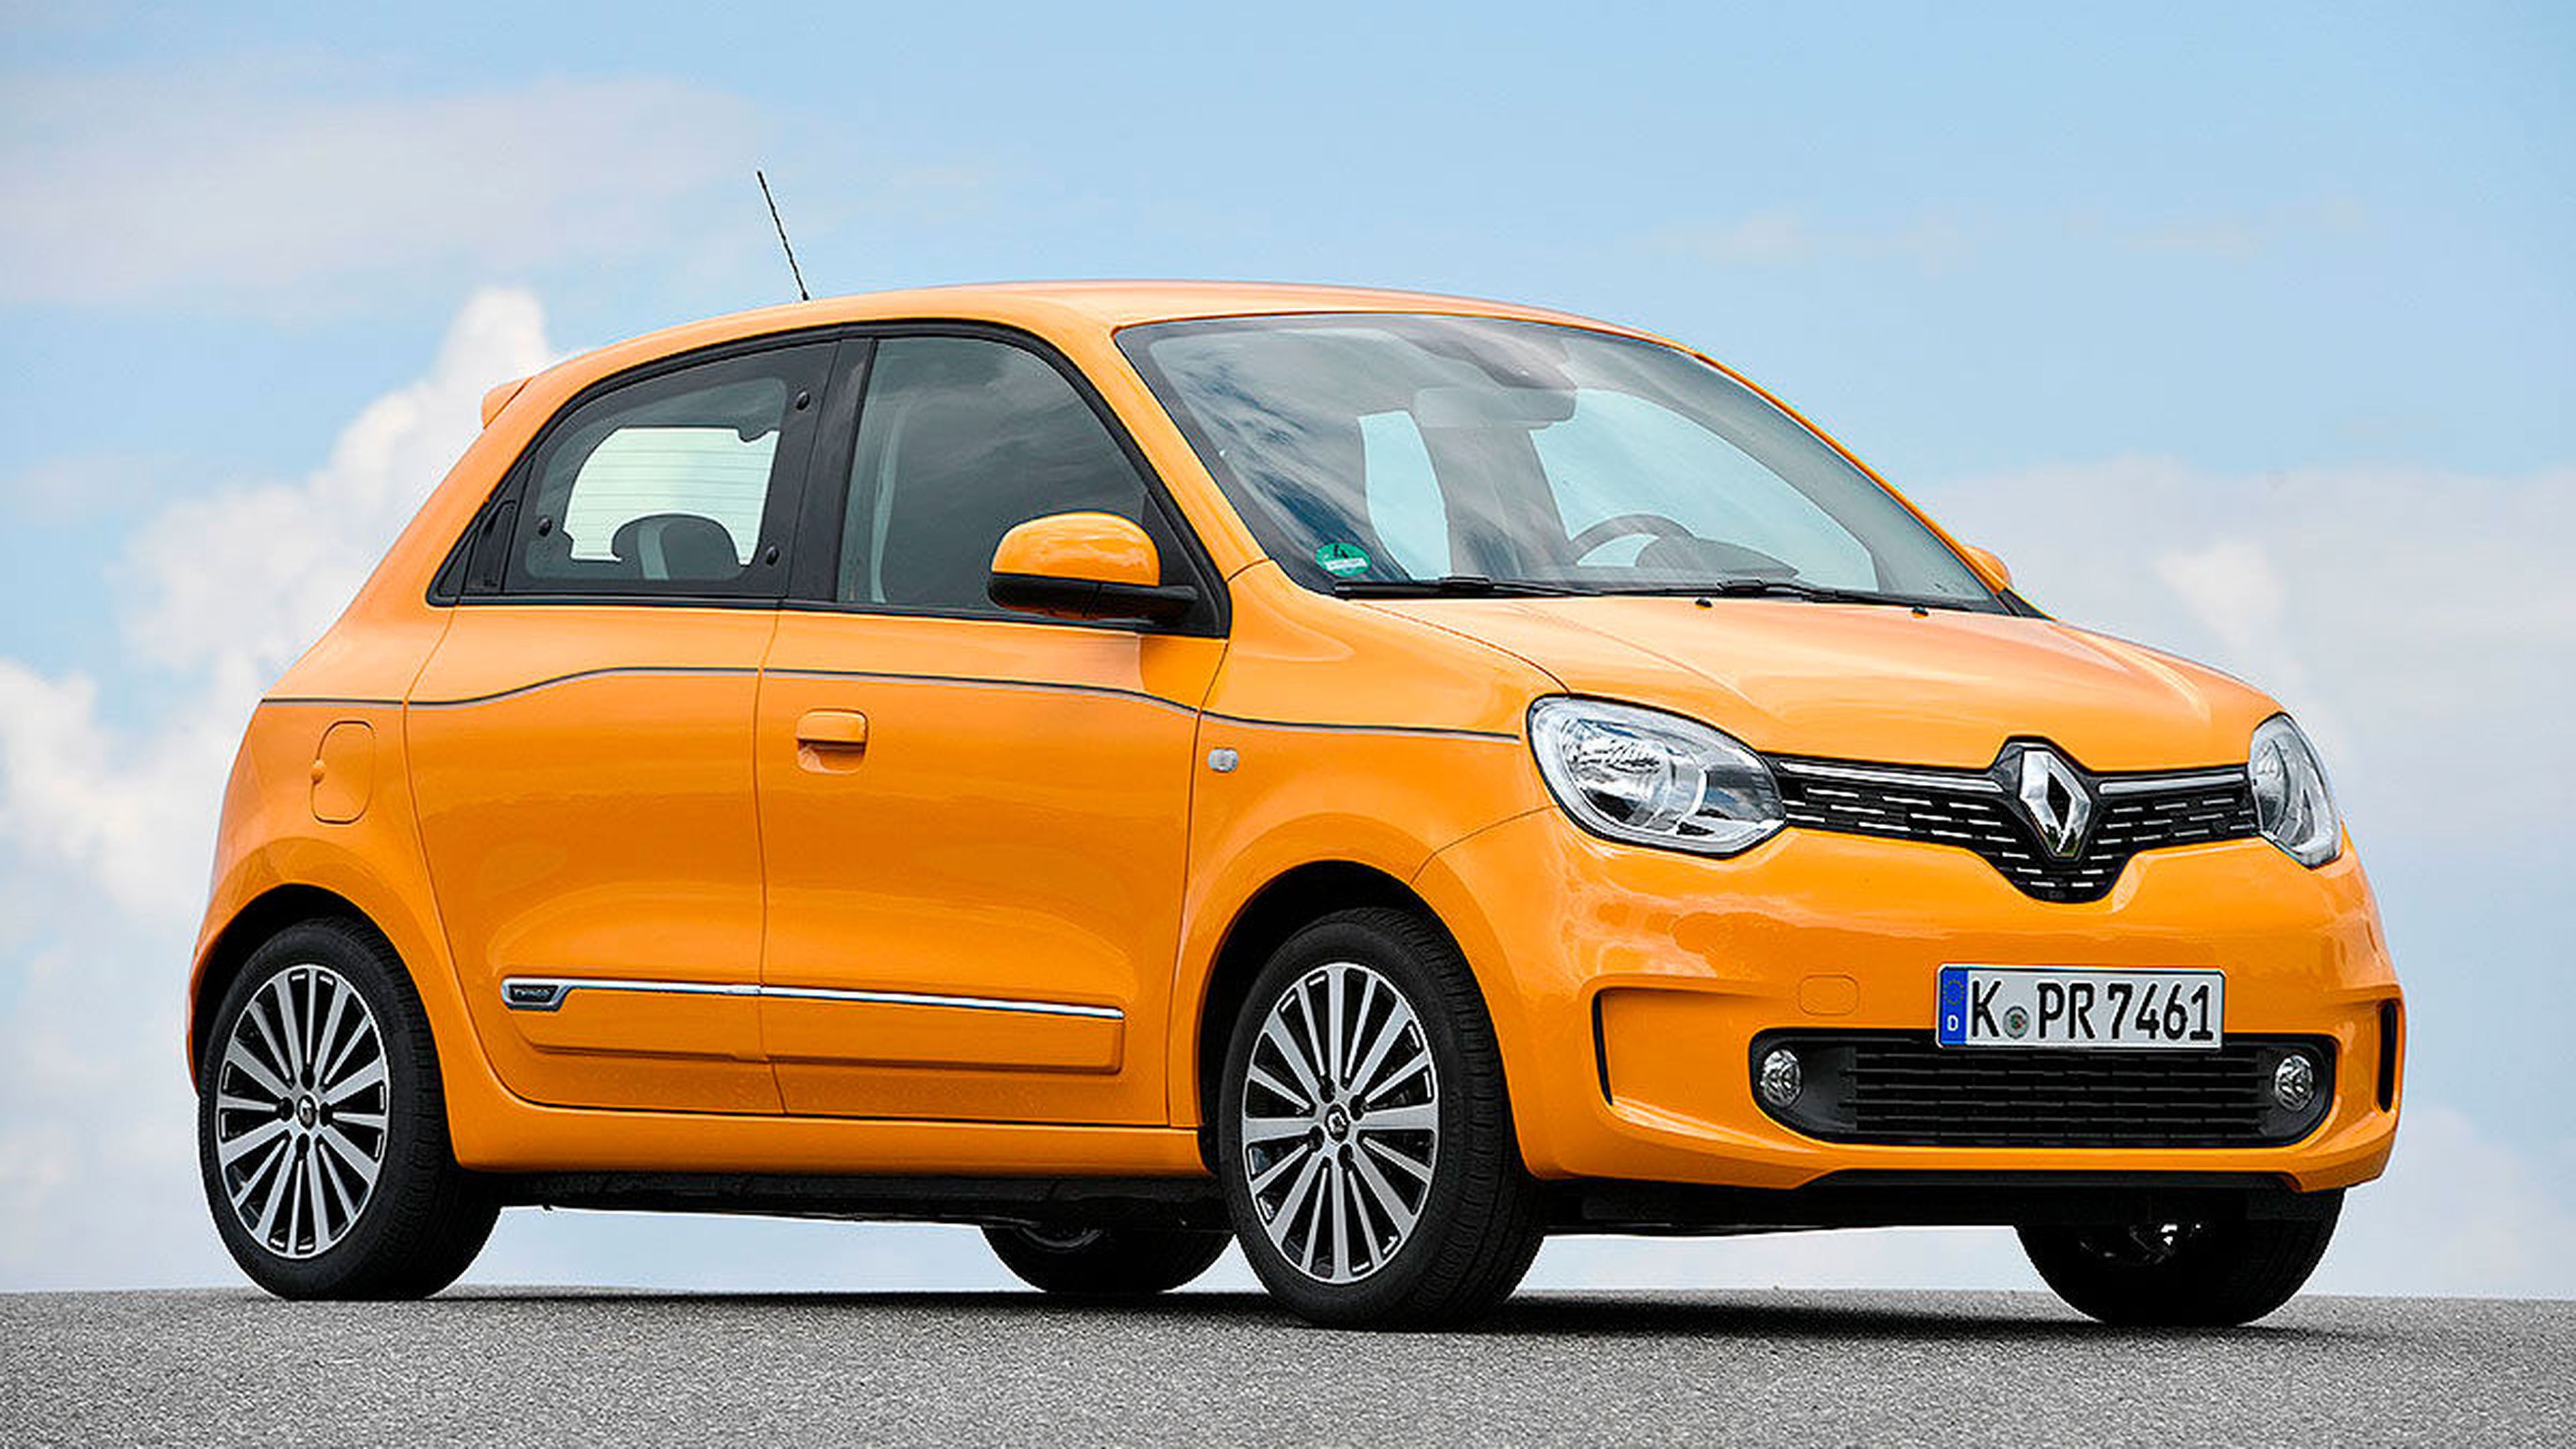 Comparativa: Renault Twingo vs Kia Picanto y Volkswagen Up